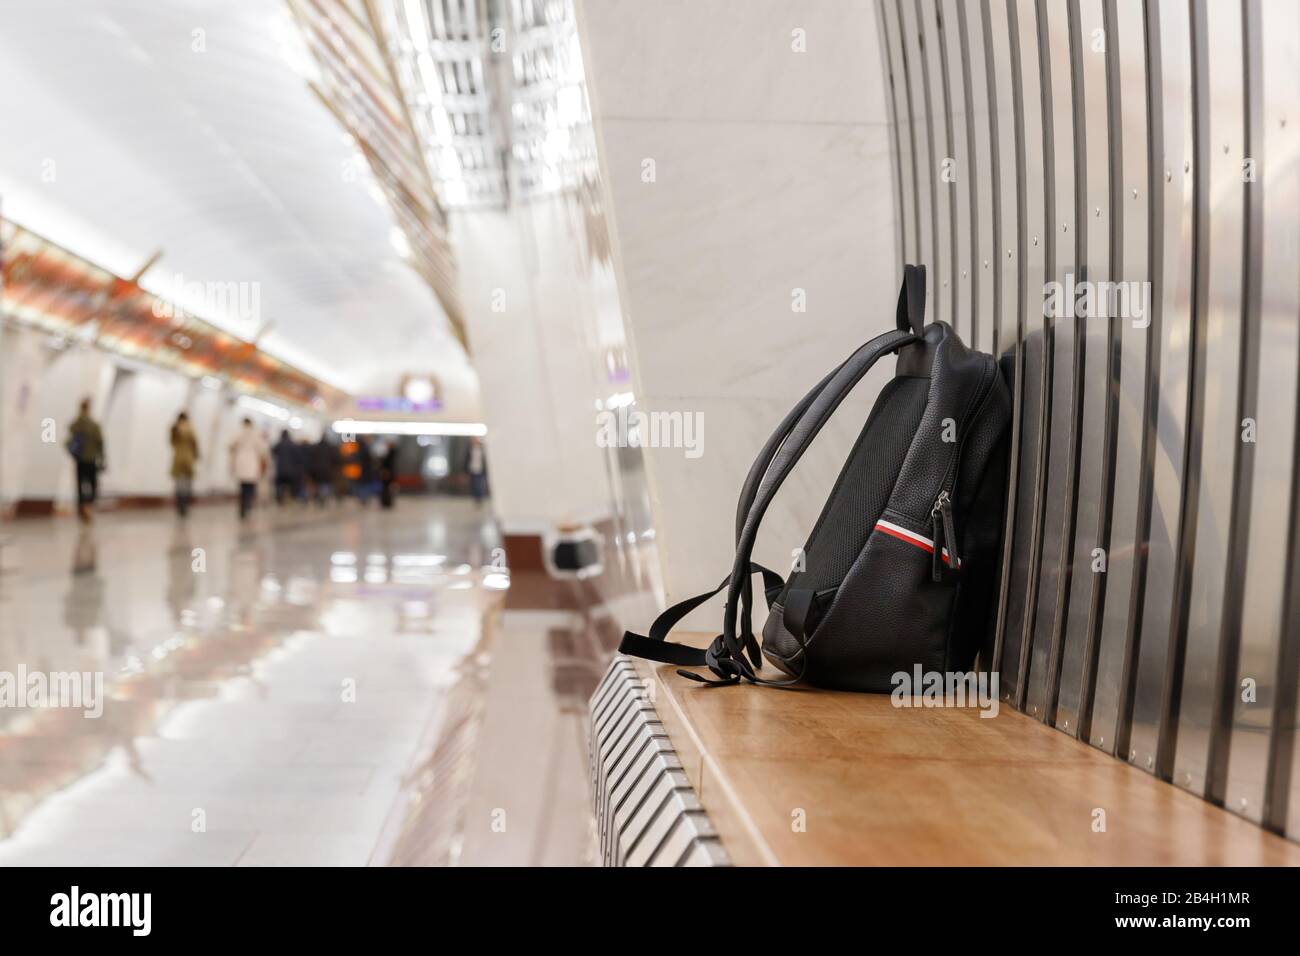 Zaino/borsa nera in pelle dimenticata o bomba per commettere un attacco terroristico si trova su un sedile nella stazione della metropolitana, i trasporti pubblici, passeggero sfocato su bac Foto Stock